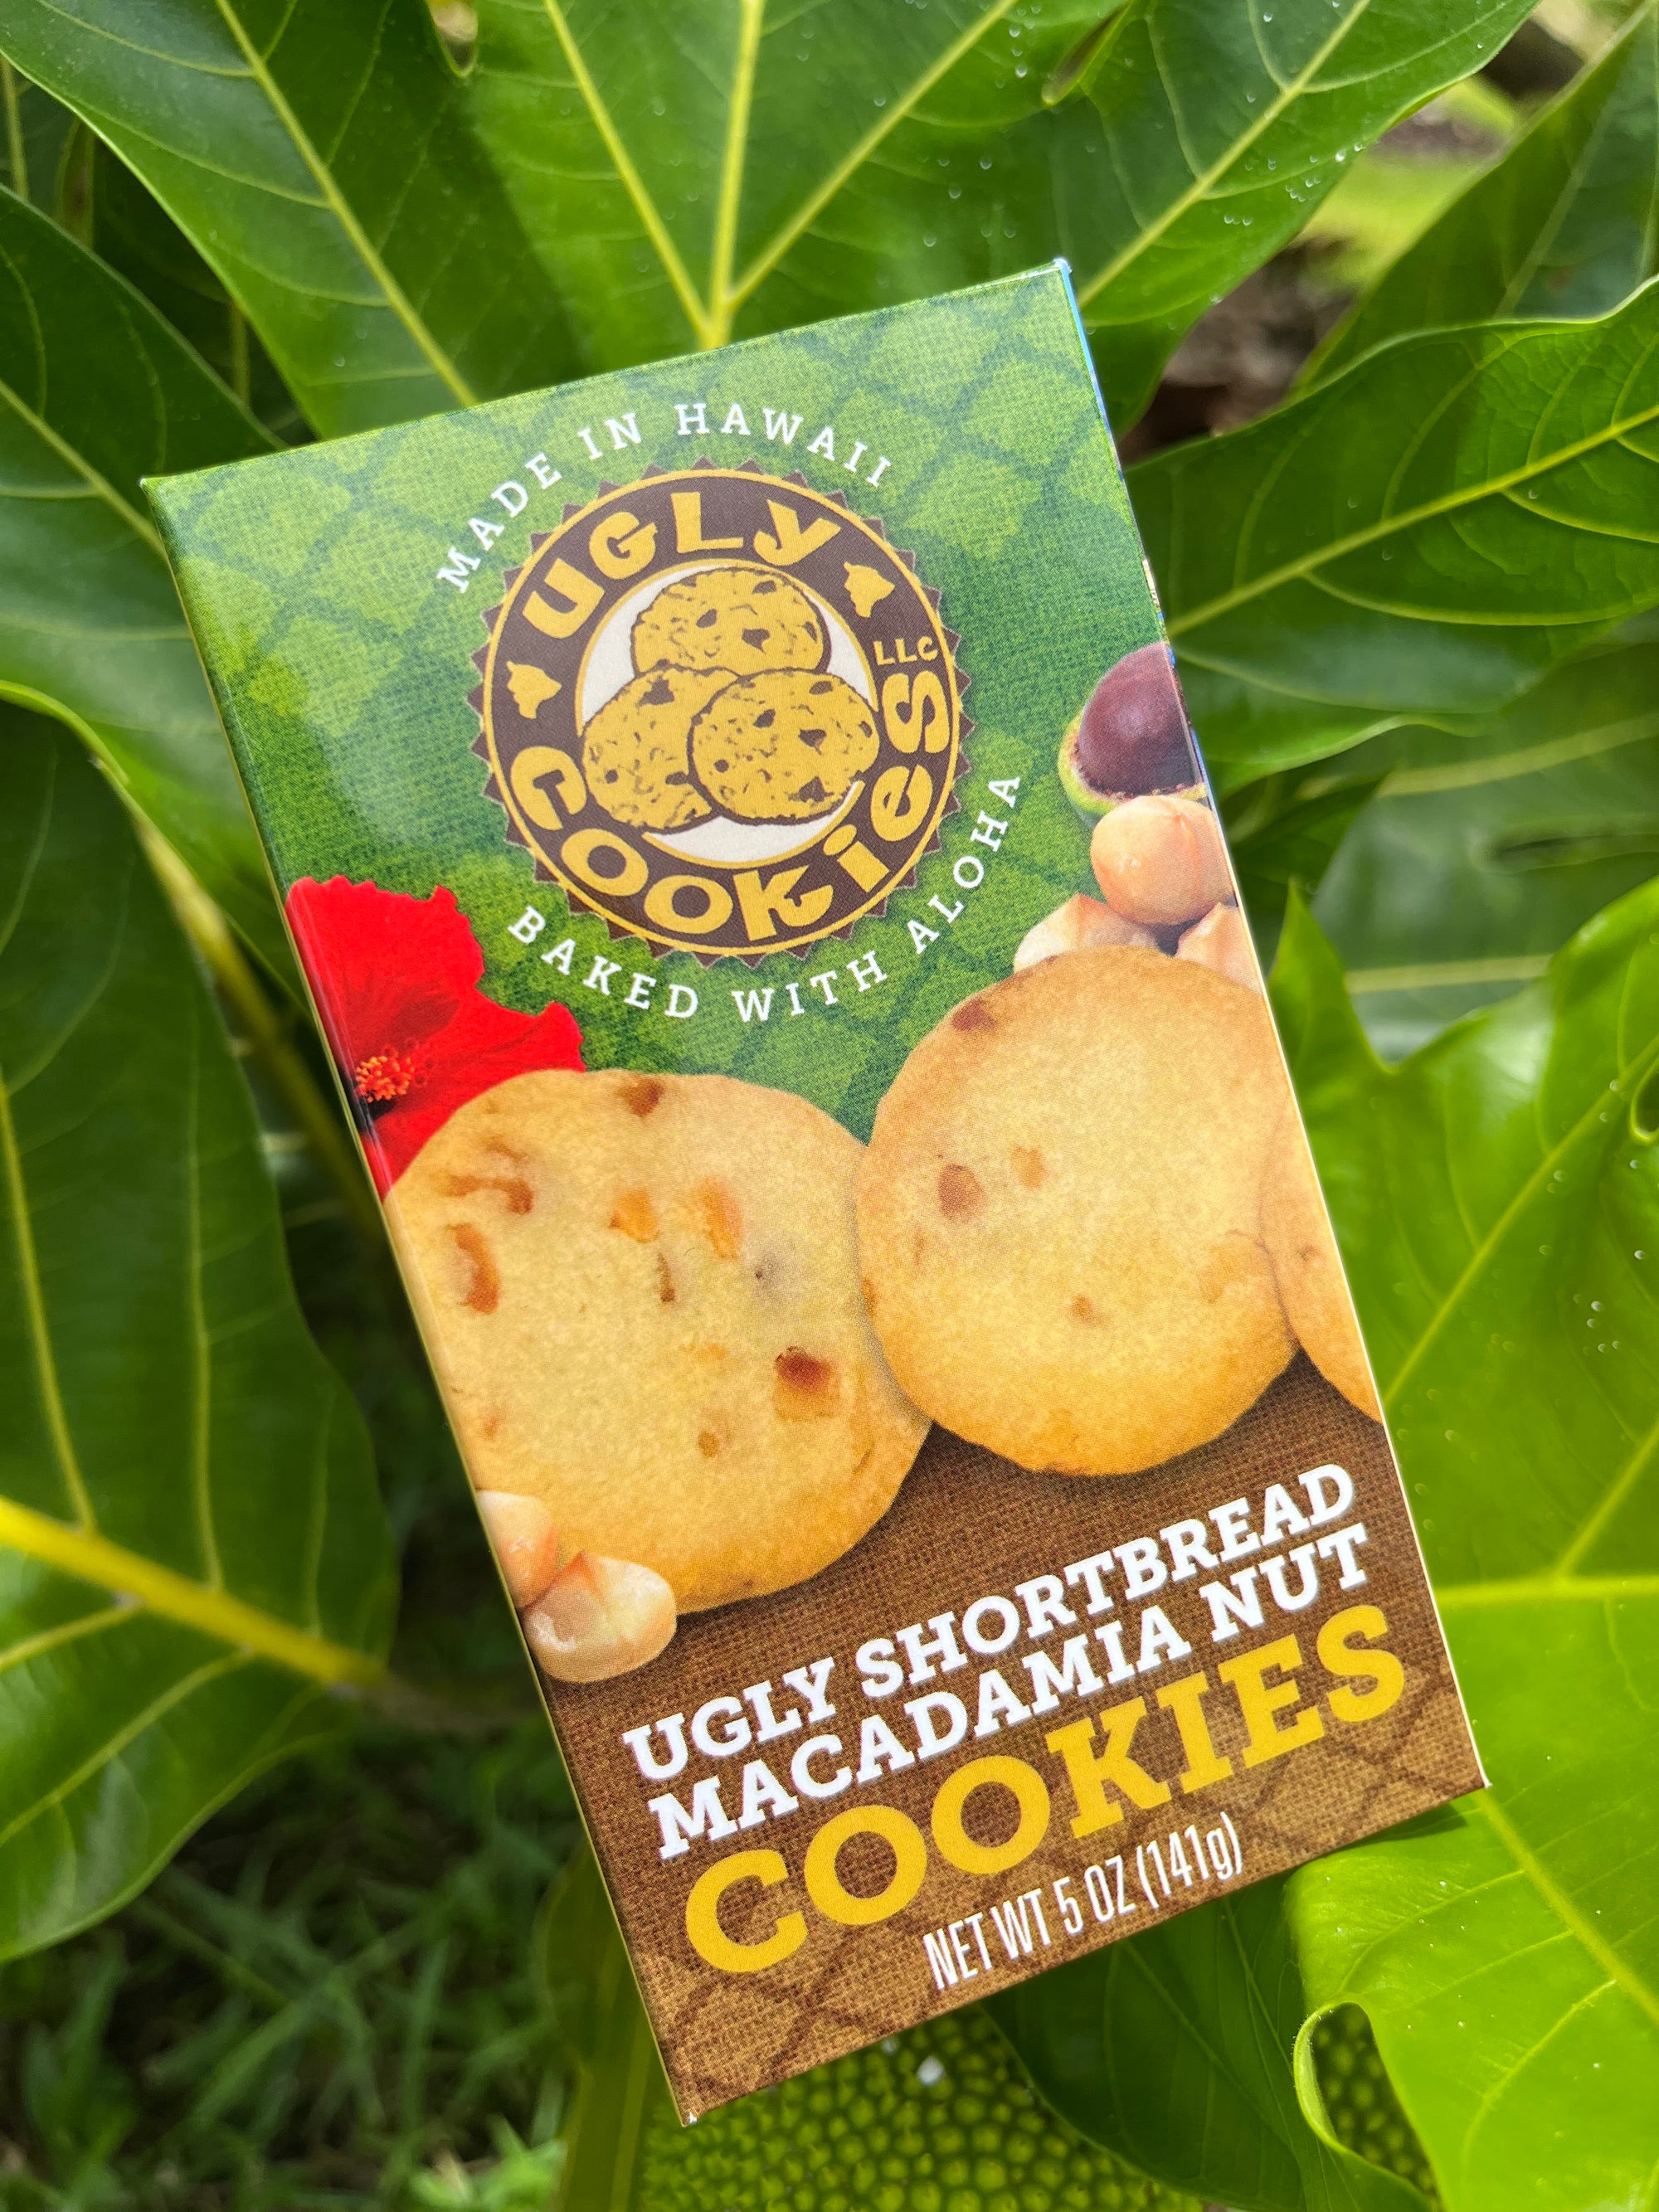 Ugly Shortbread with Macadamia Nuts Cookies 5 oz ugly-cookies-hawaii